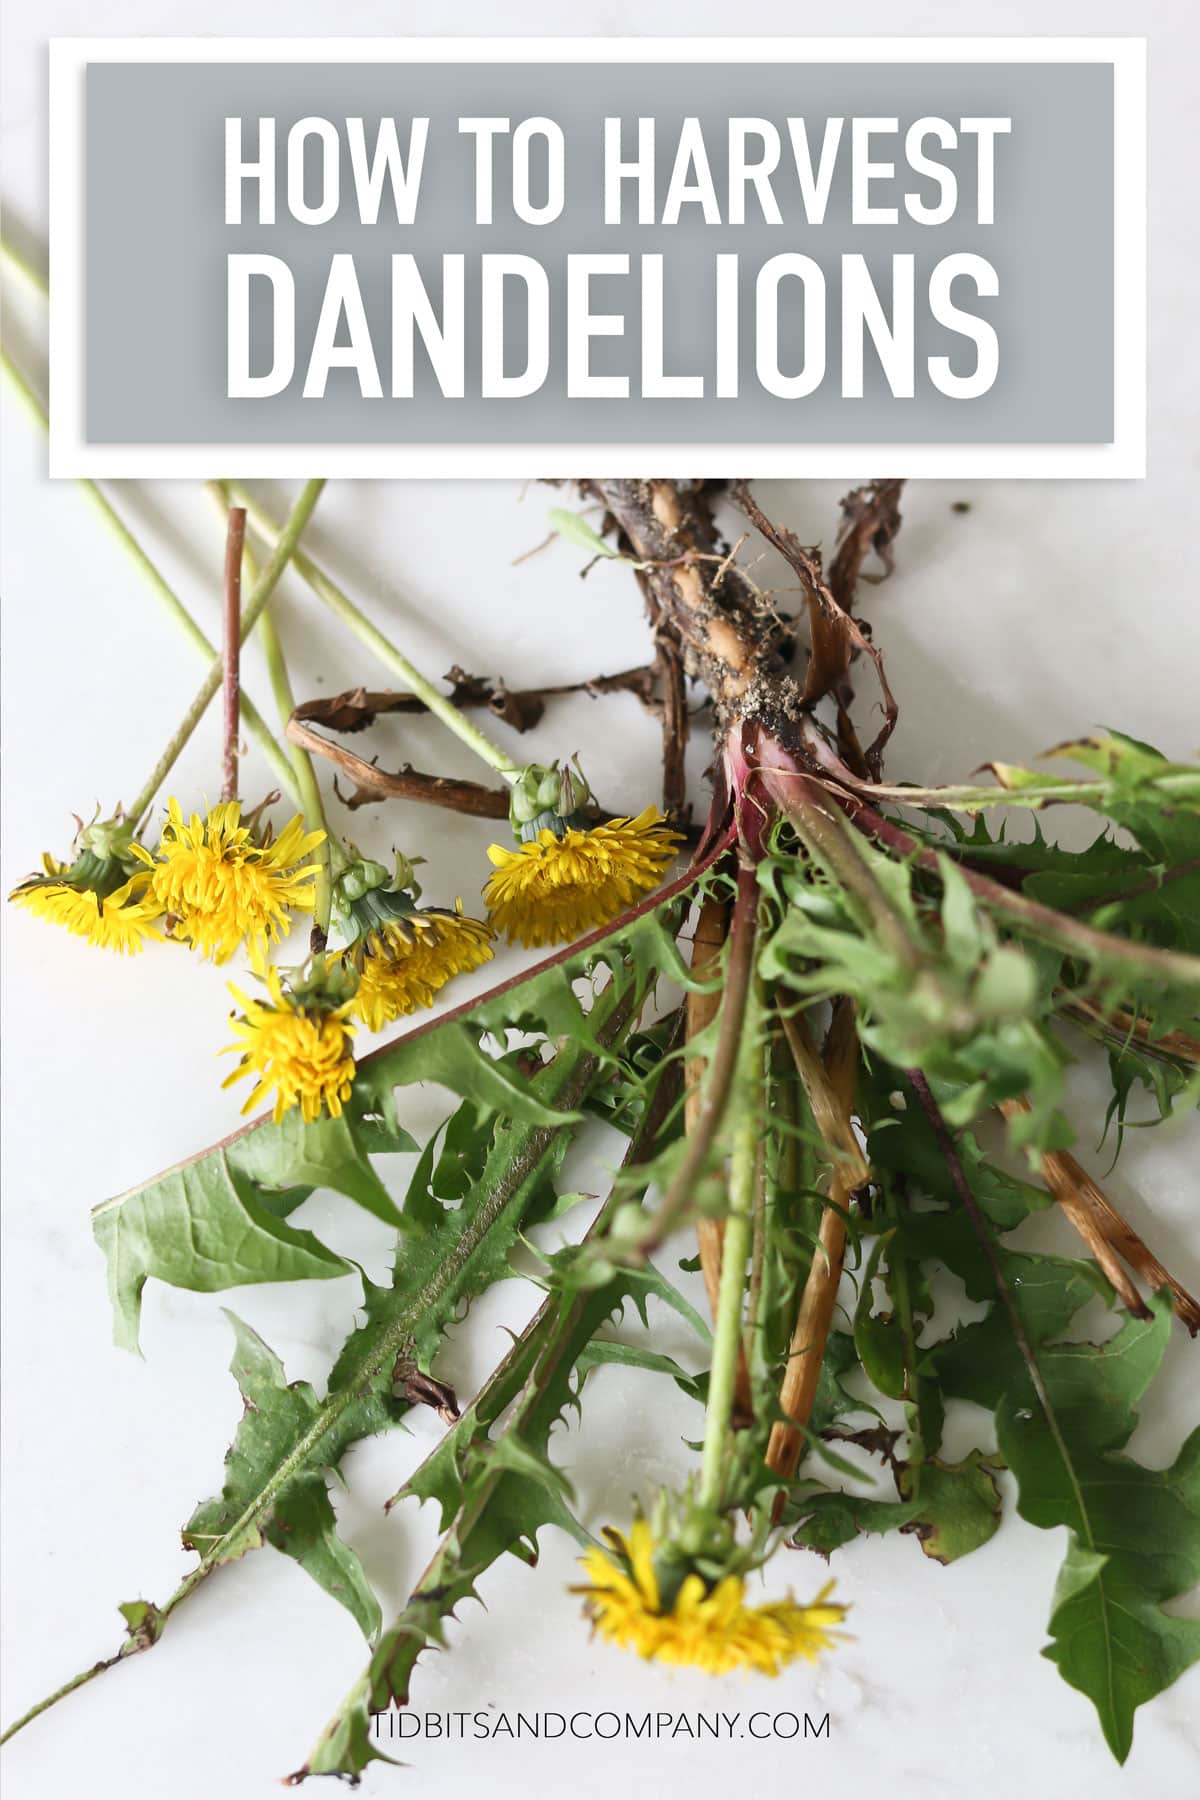 A harvested dandelion plant